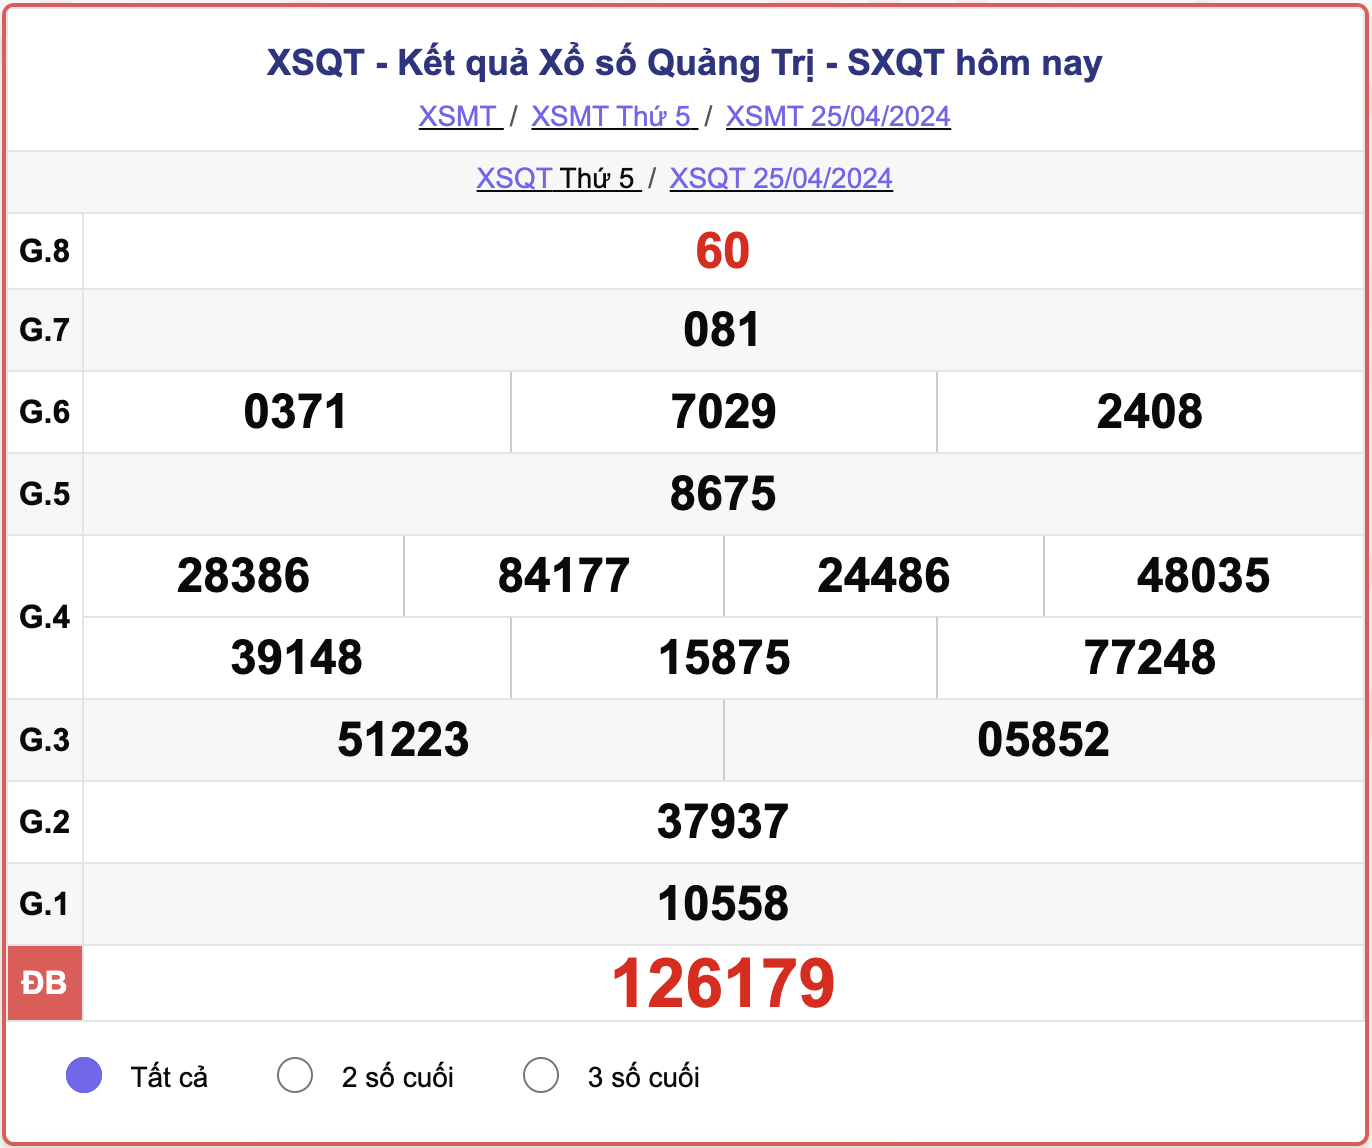 XSQT thứ Năm, kết quả xổ số Quảng Trị ngày 25/4/2024.